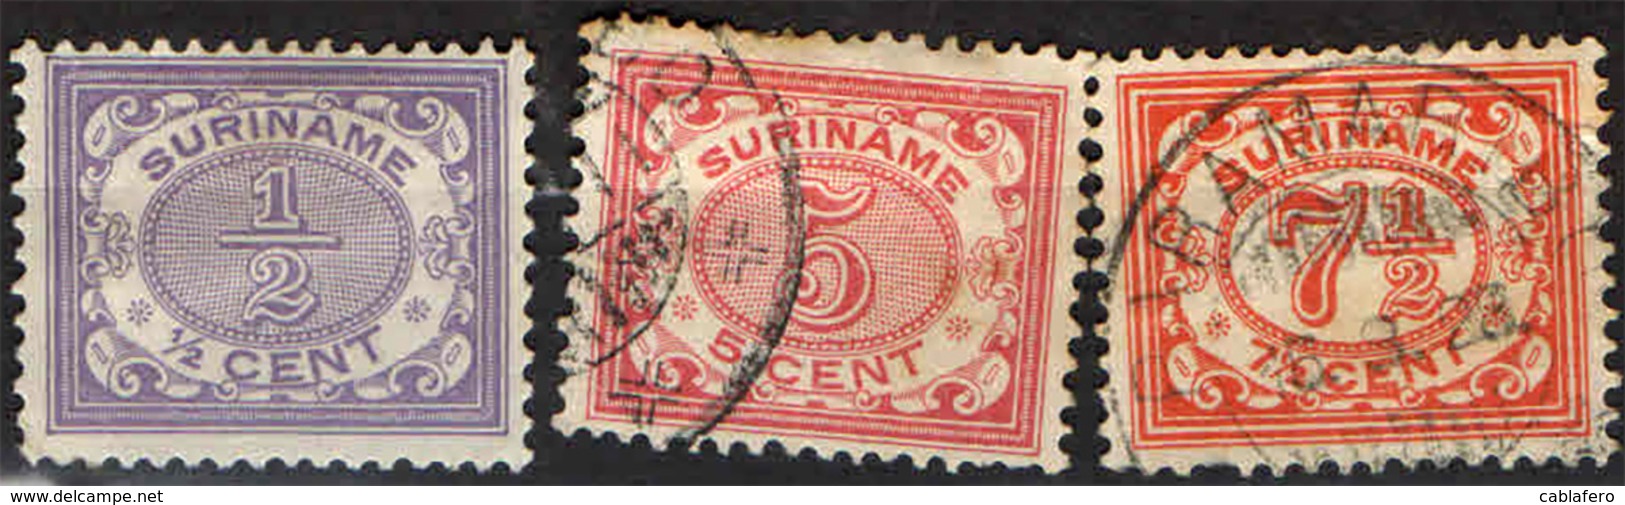 SURINAME - 1913 - CIFRE - NUMERALS - USATI - Surinam